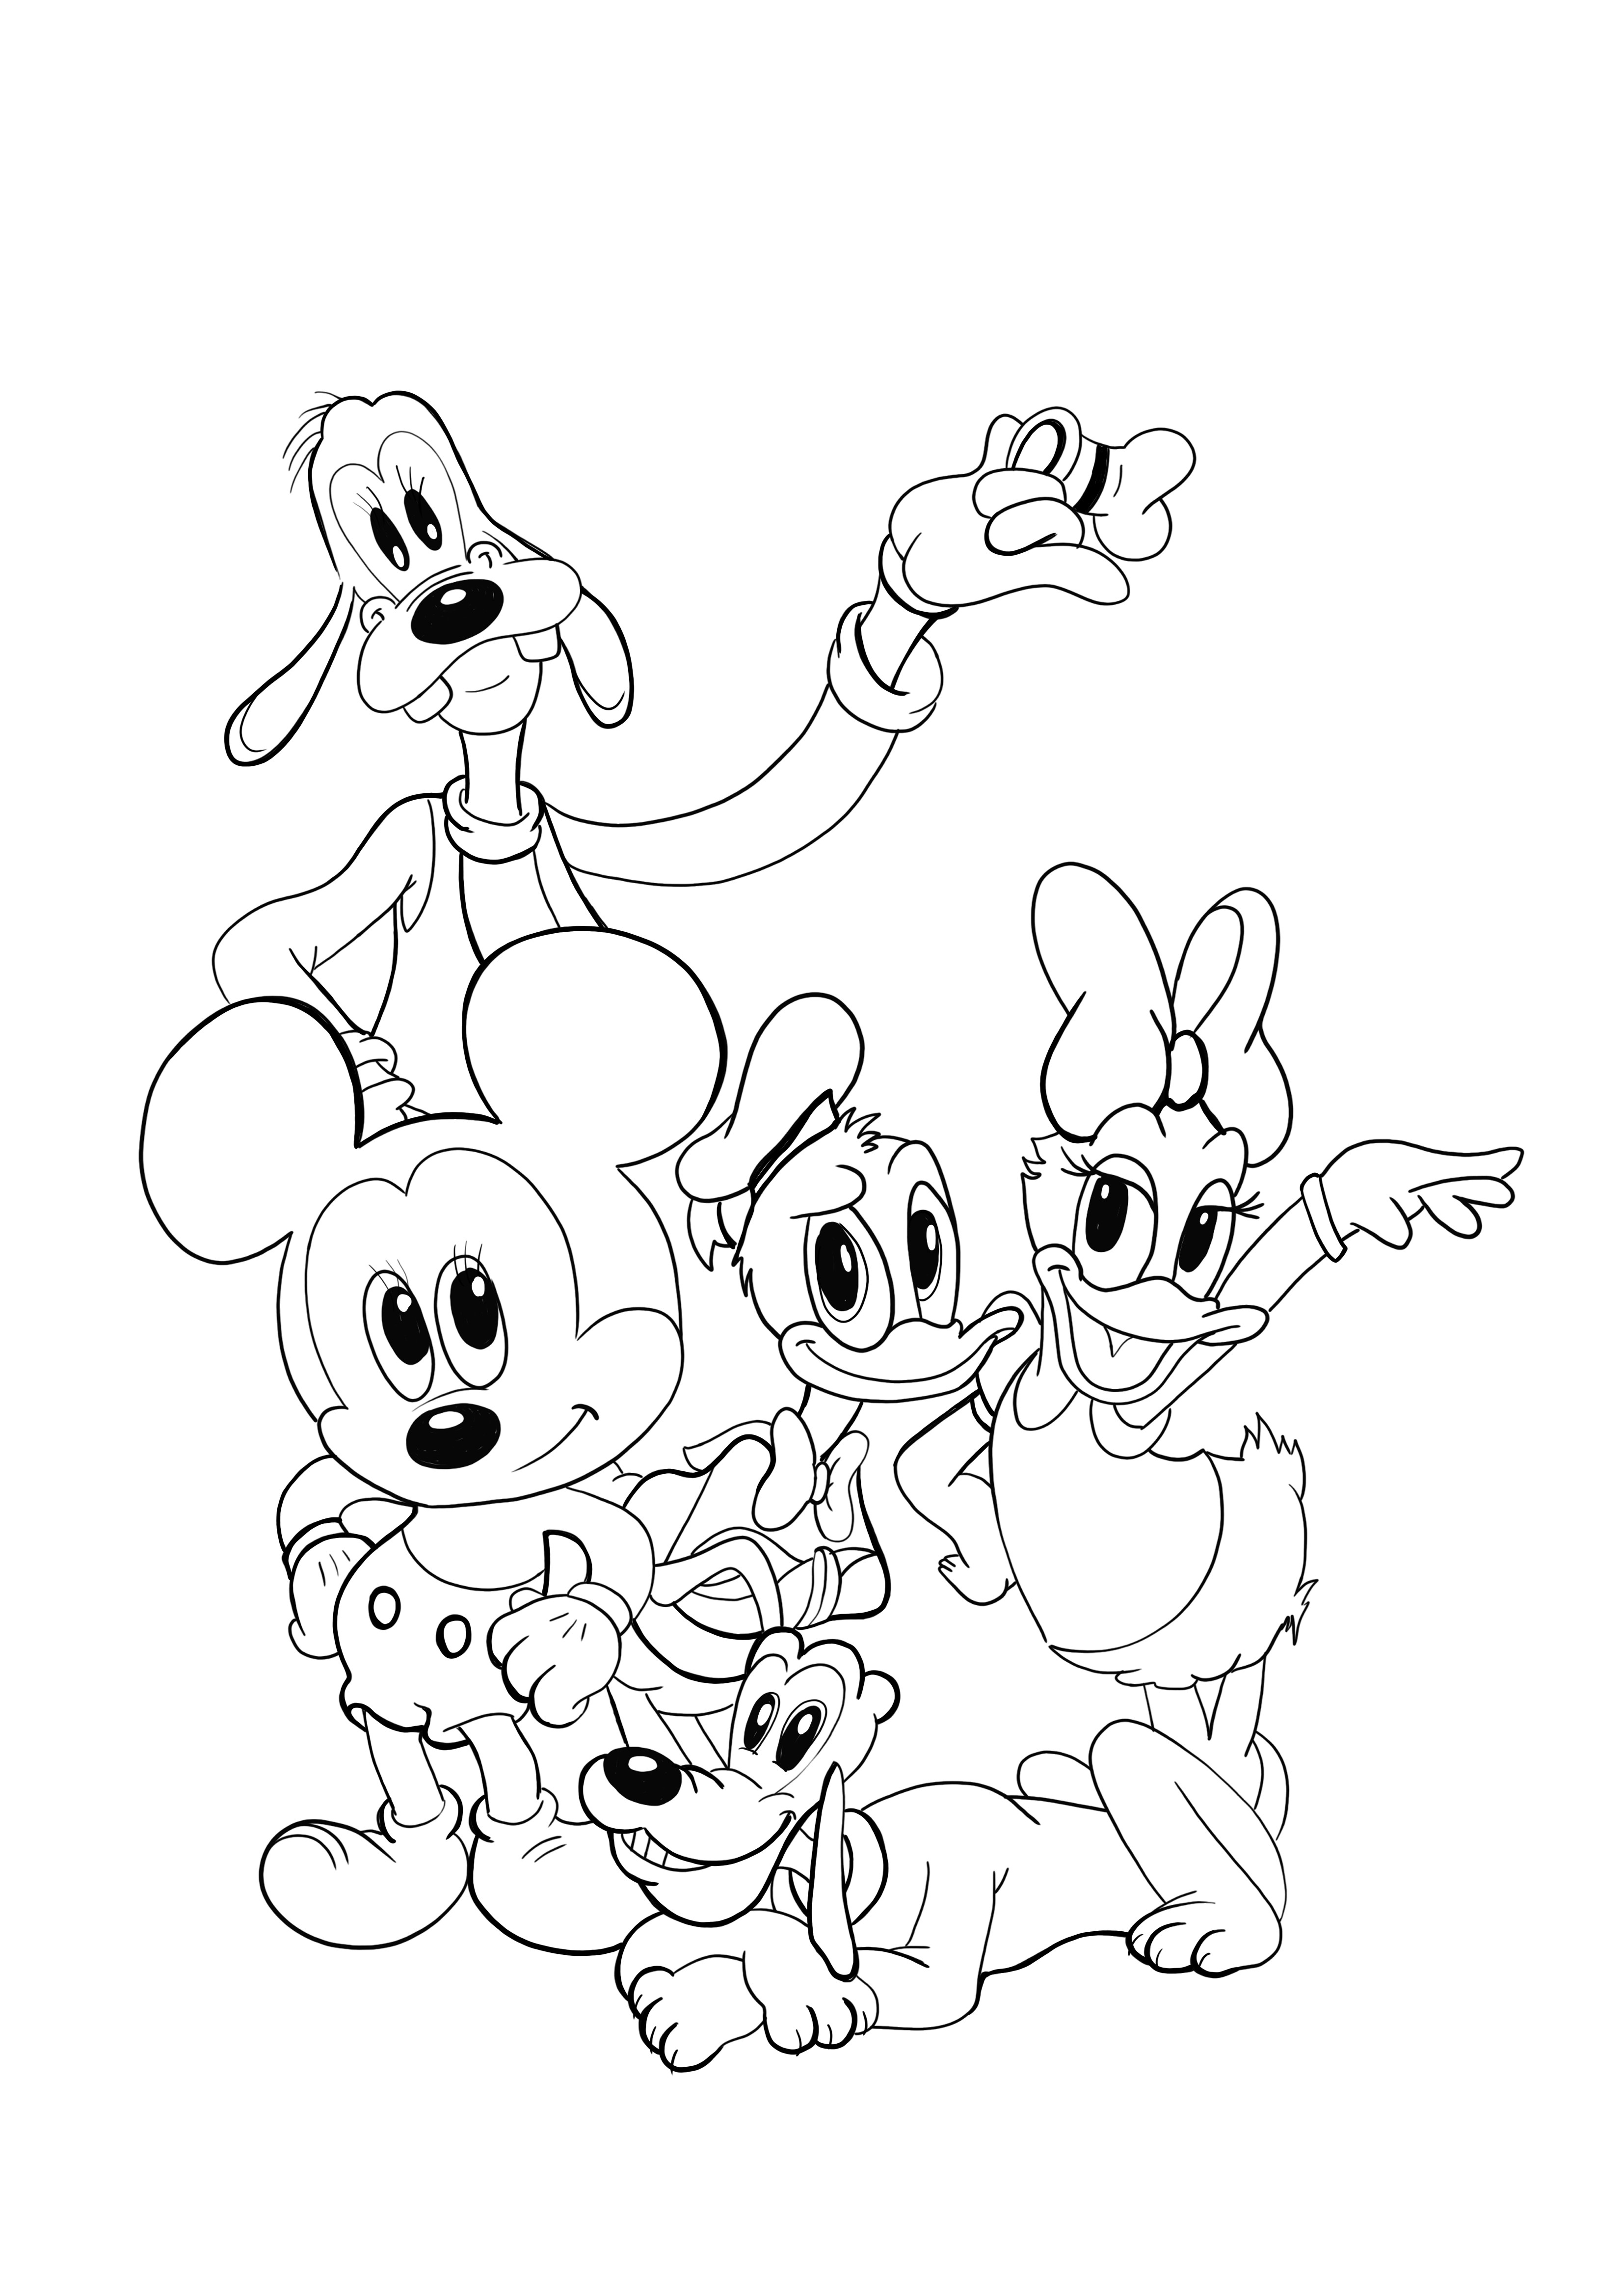 Nuori Pluto-Minnie-Donald-ja ystävät -värityssivu ladattavaksi ilmaiseksi